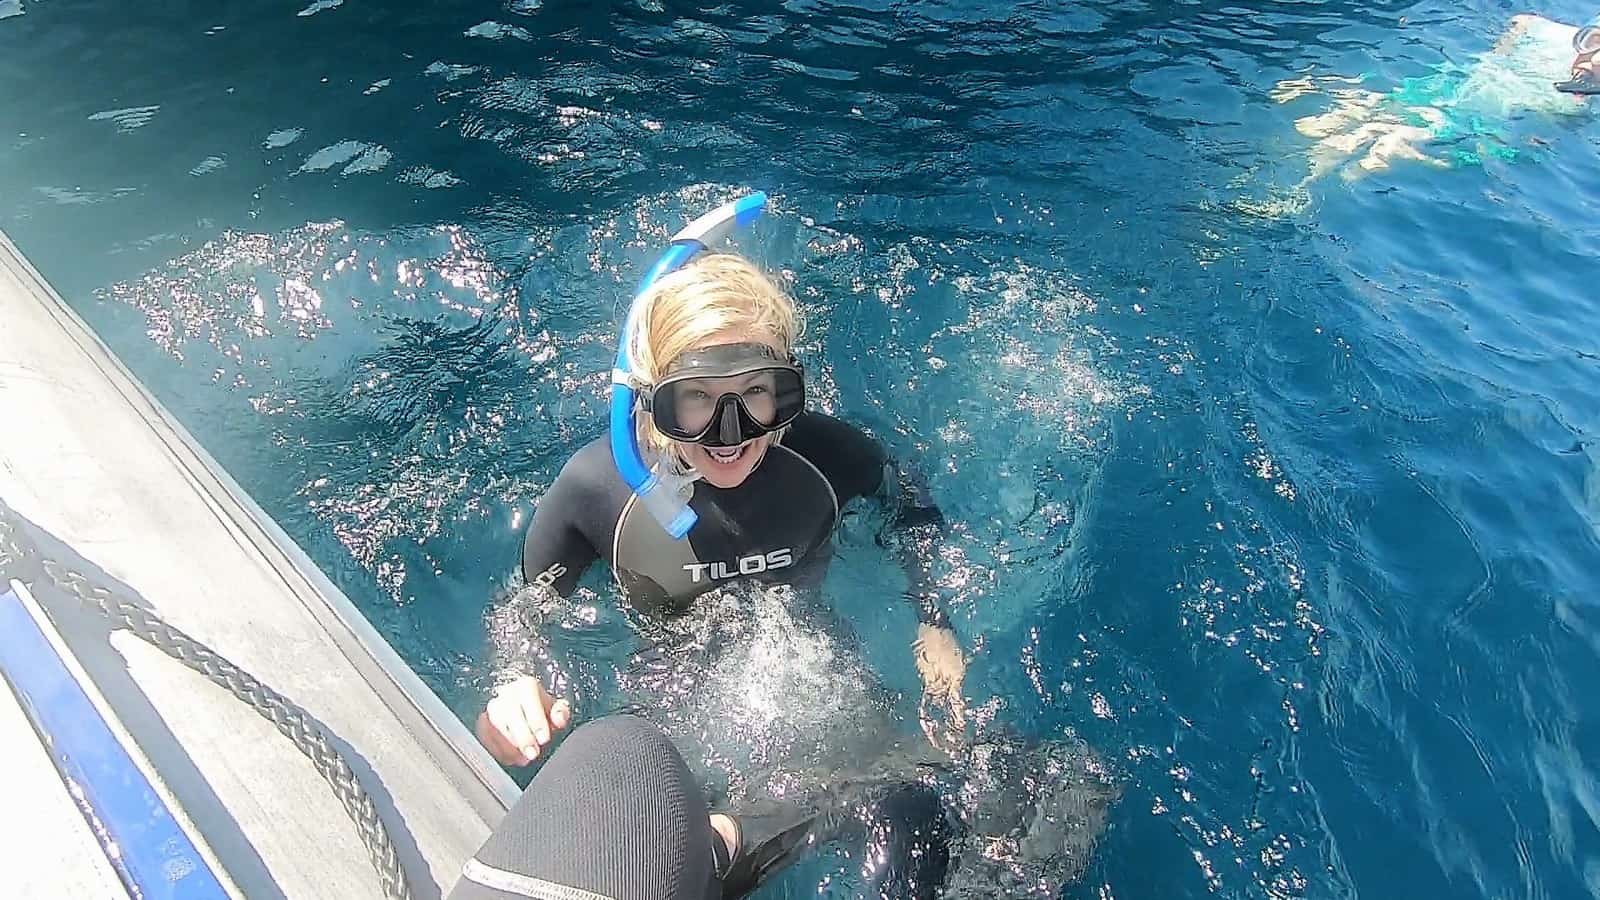 Tina snorkeling